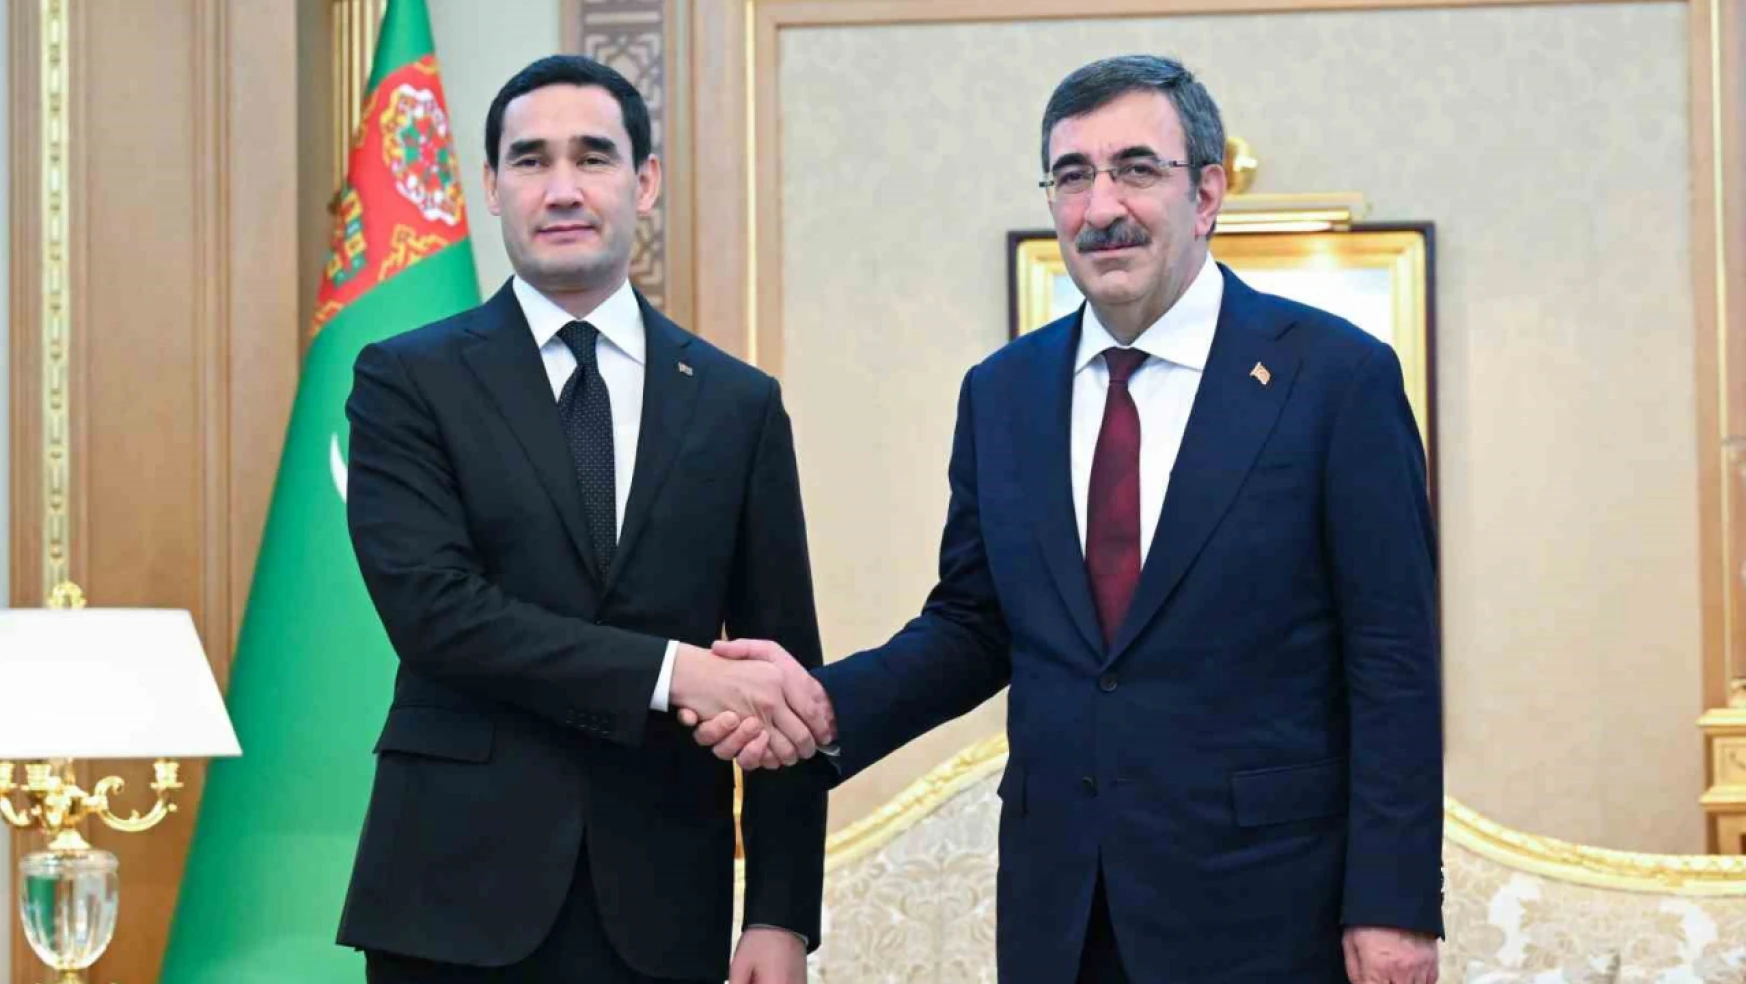 Cumhurbaşkanı Yardımcısı Cevdet Yılmaz, 10. Türkmenistan Türk İhraç Ürünleri Fuarı'nda yaptığı konuşmada, Türk müteahhitlerimiz bugüne kadar Türkmenistan'da 51 milyar dolar değerinde bin 80 proje üstlenmiştir